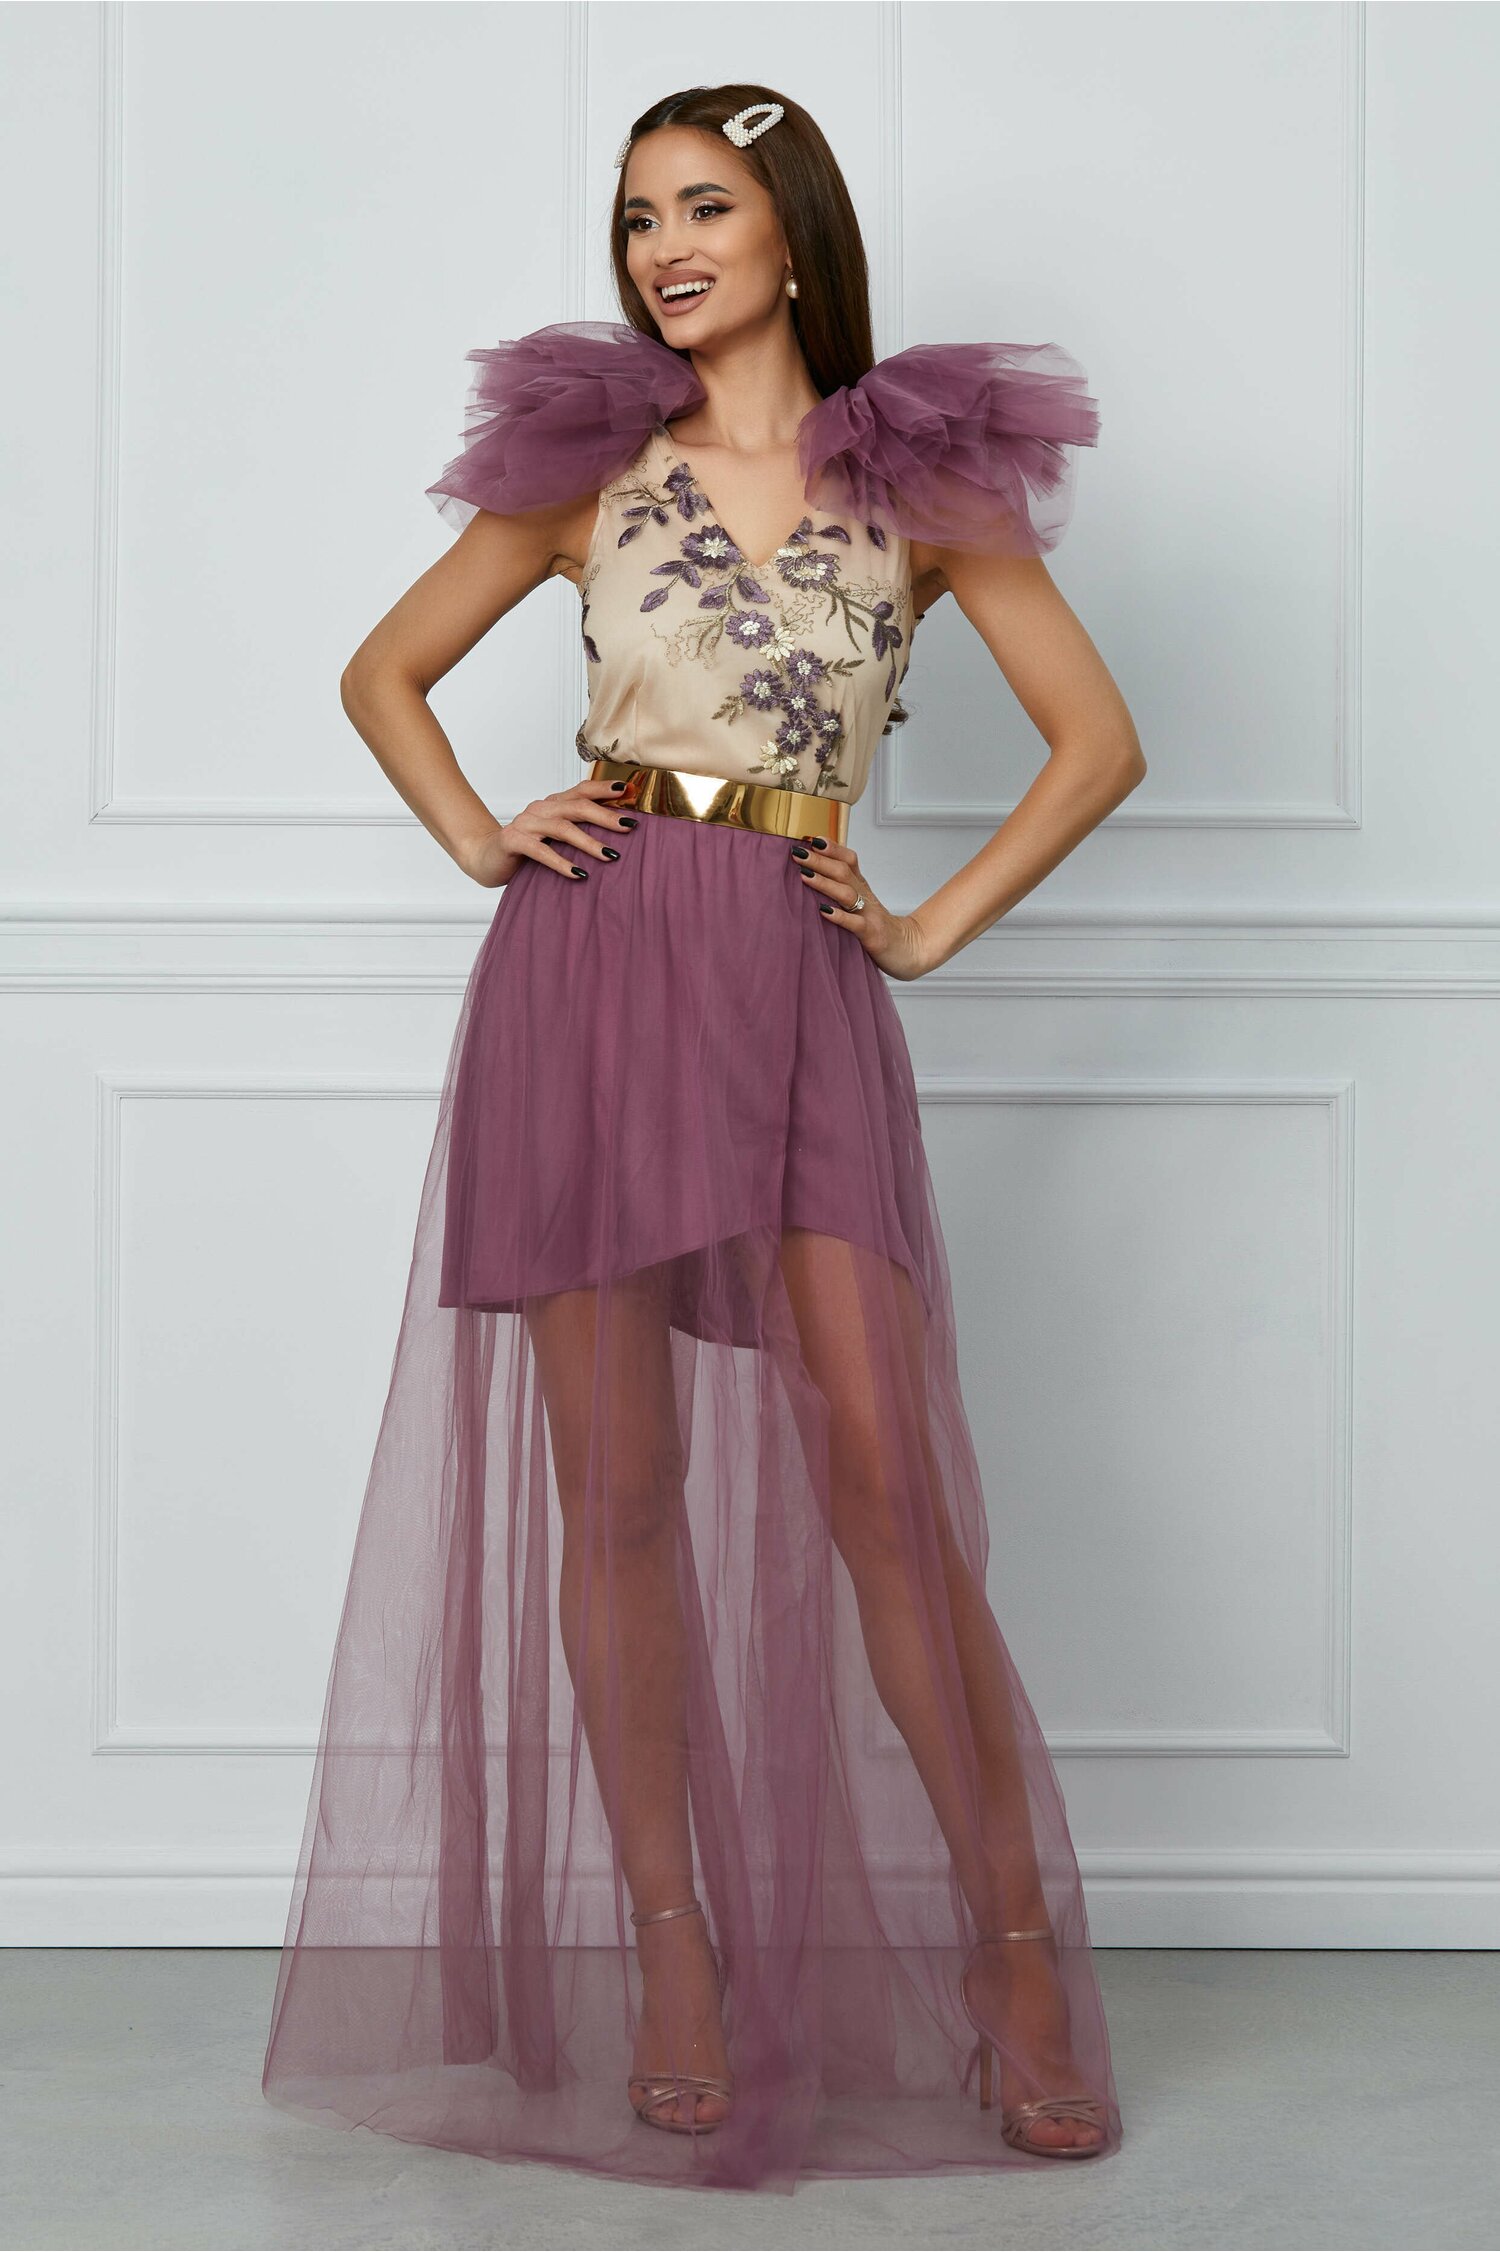 Rochie Dy Fashion Milena lila din tulle cu broderie la bust 2023 ❤️ Pret Super dyfashion imagine noua 2022